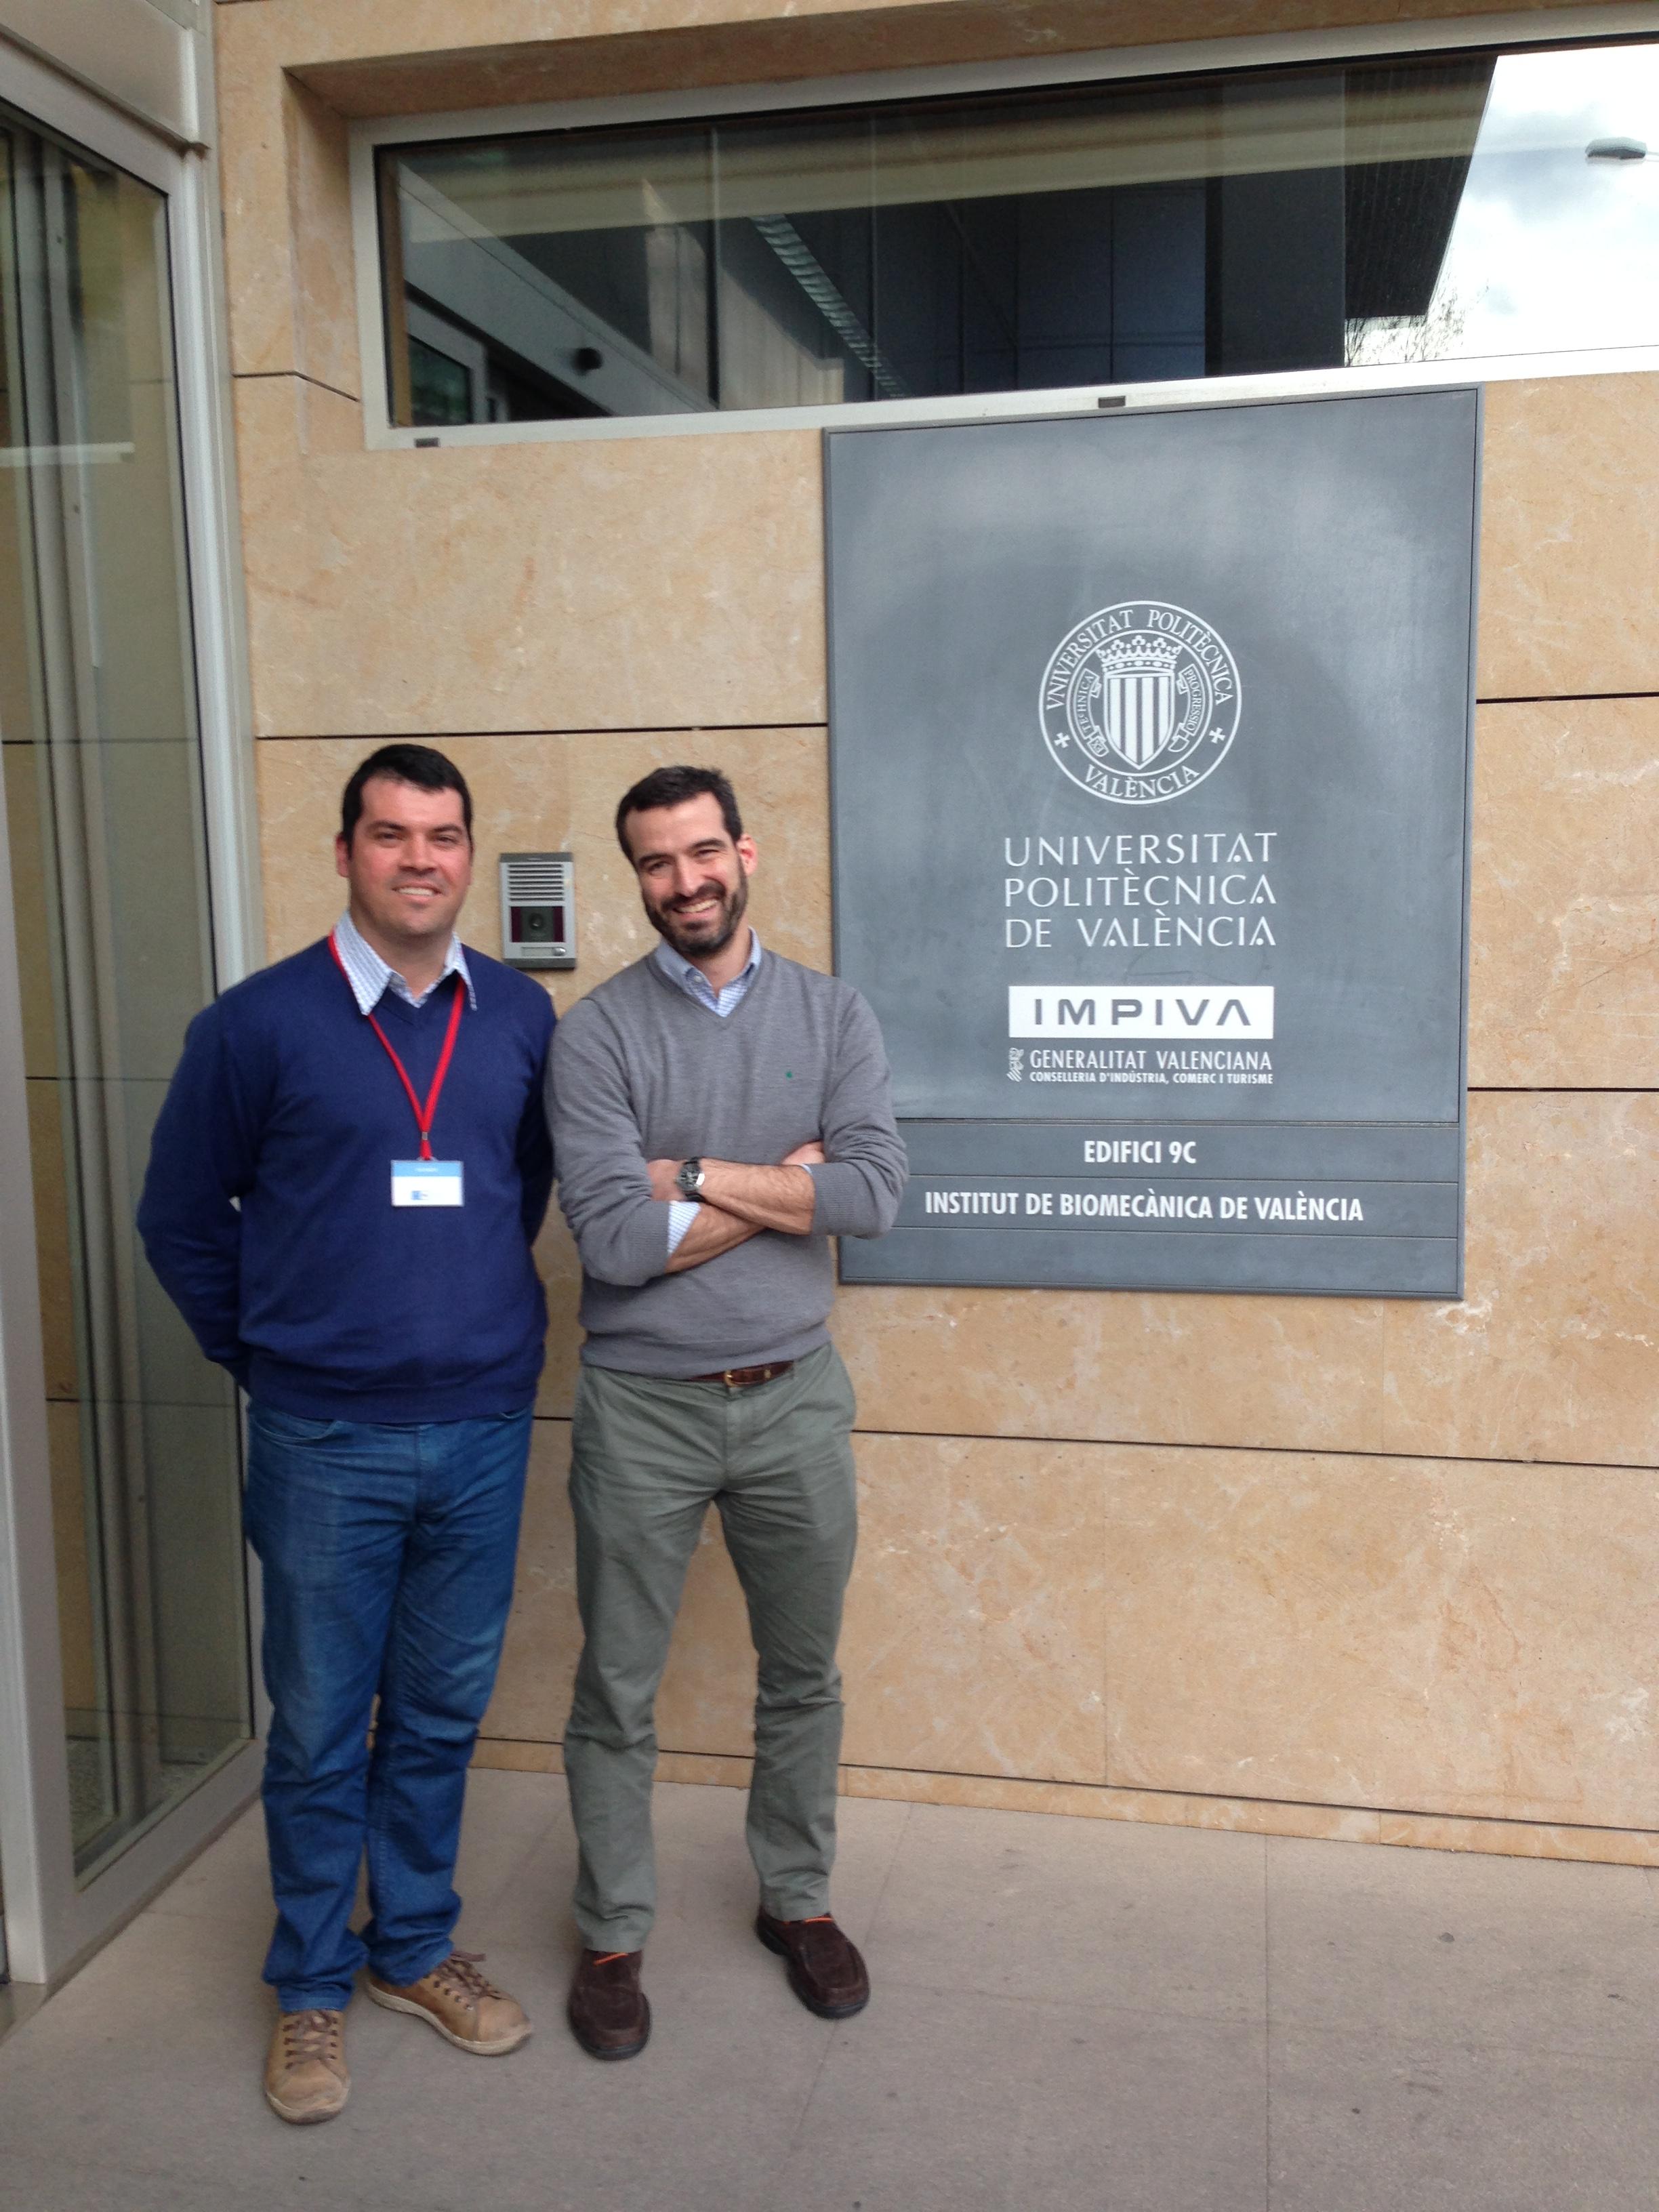 dois homens, o da esquerda sendo o professor Felipe carpes, posam para a foto ao lado de placa do Instituto de biomecânica de Valência